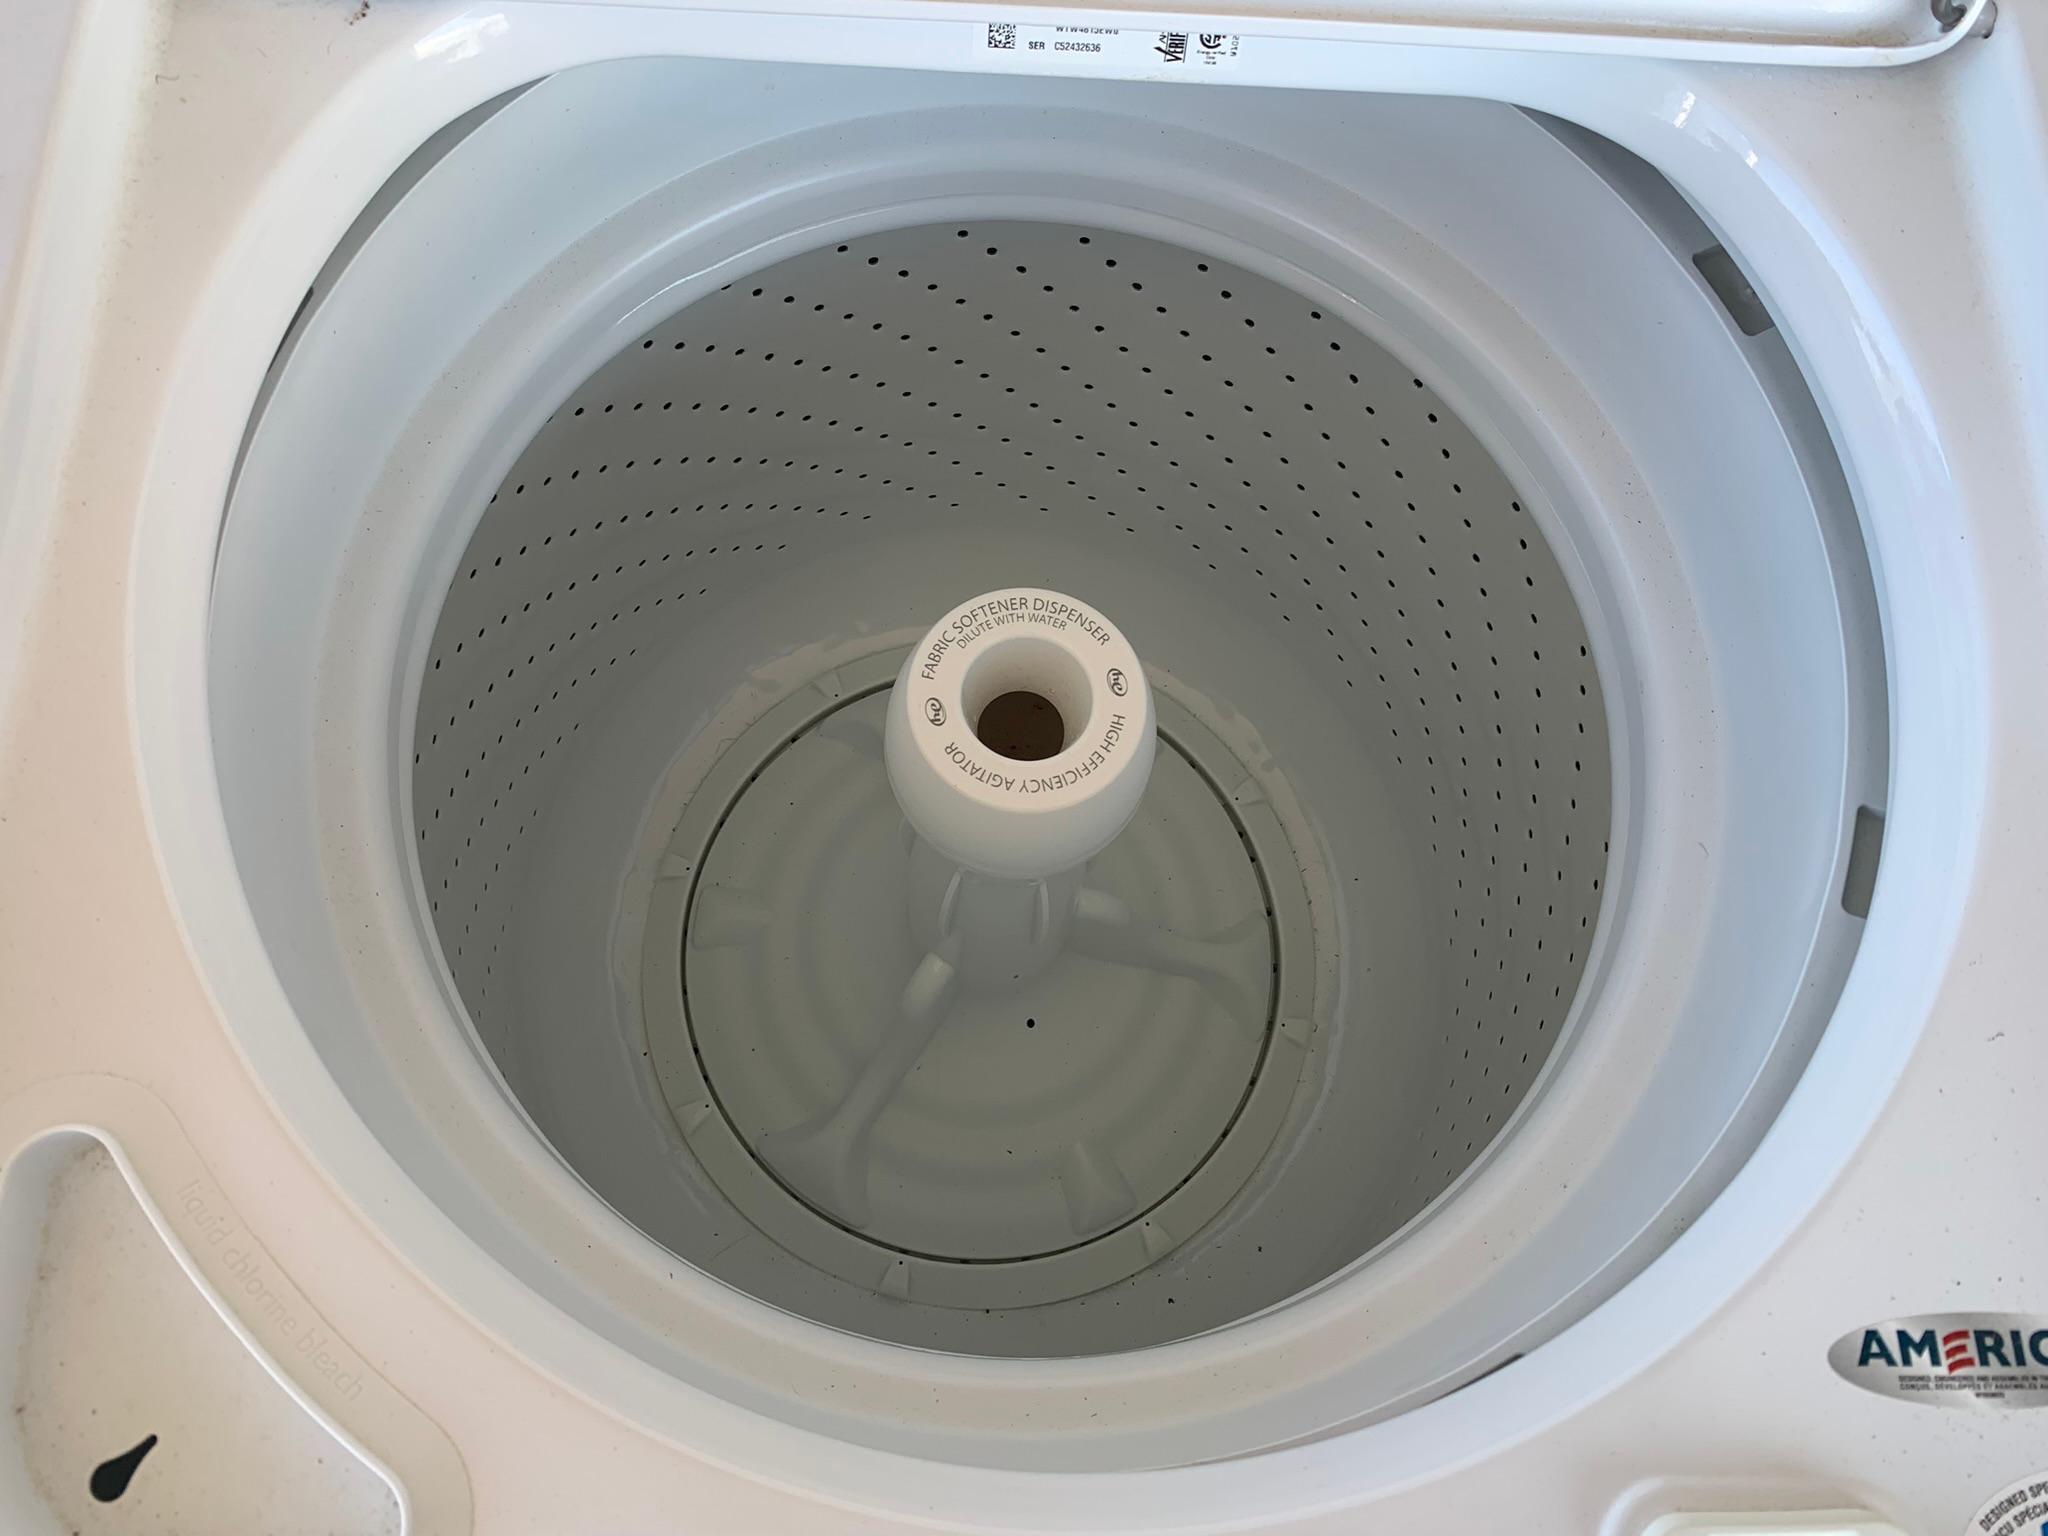 Whirlpool Washing Machine & Dryer